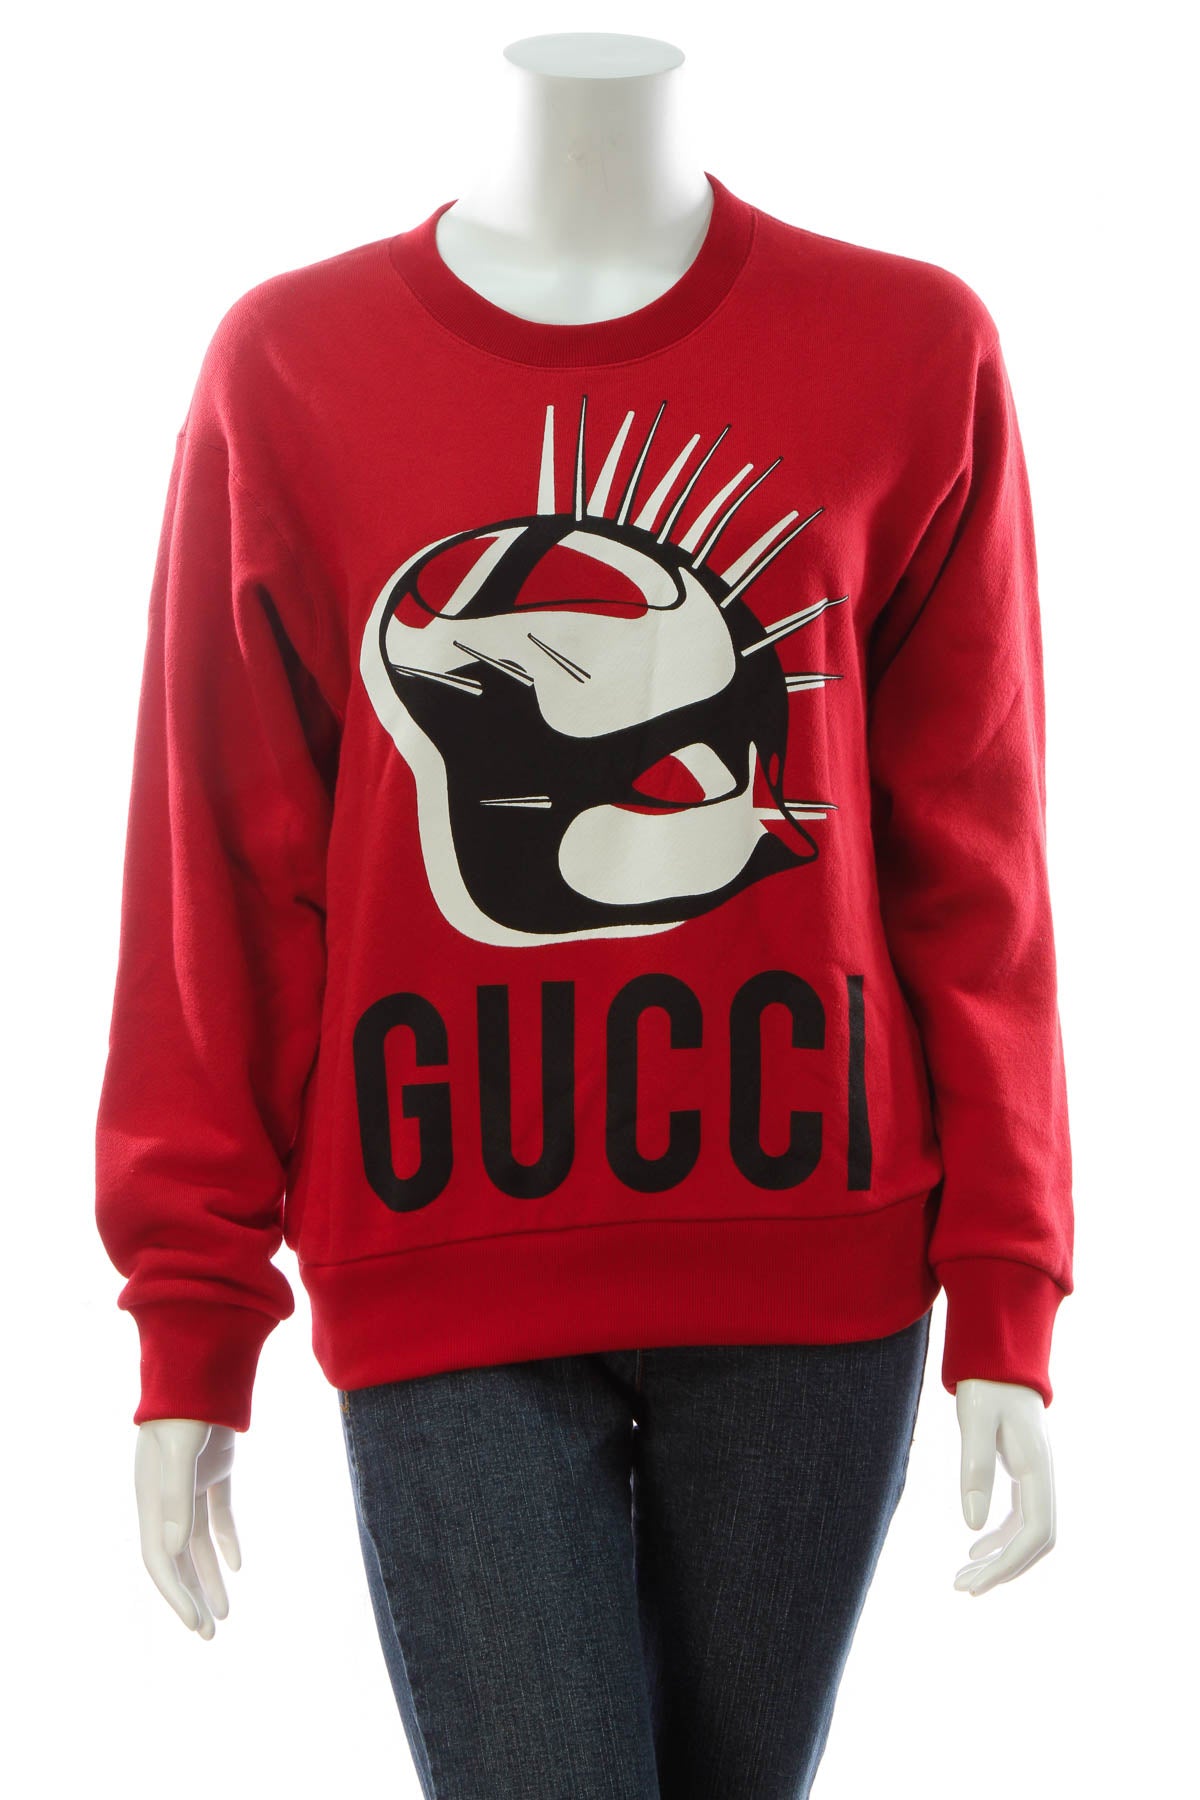 Gucci Manifesto Sweatshirt - Red Size XXSmall